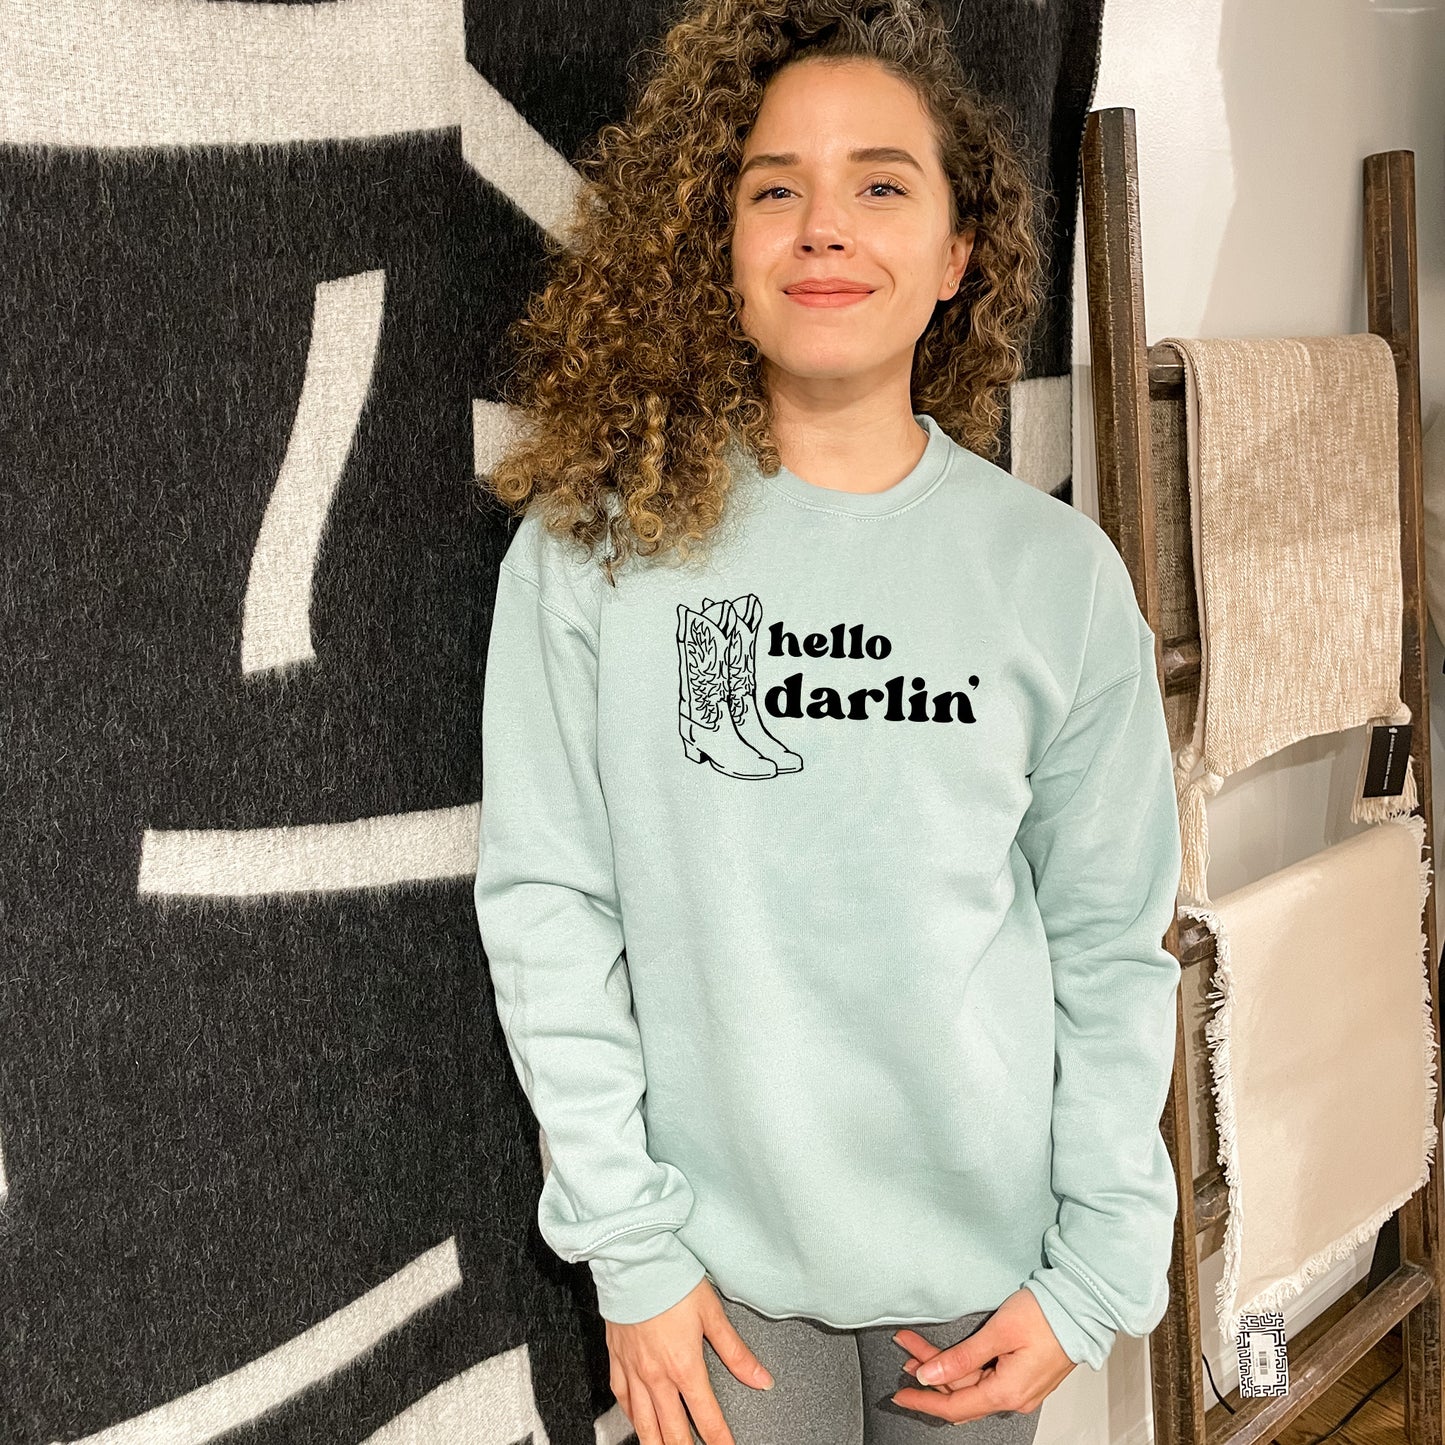 Hello Darlin' - Unisex Sweatshirt - Dusty Blue or Athletic Heather